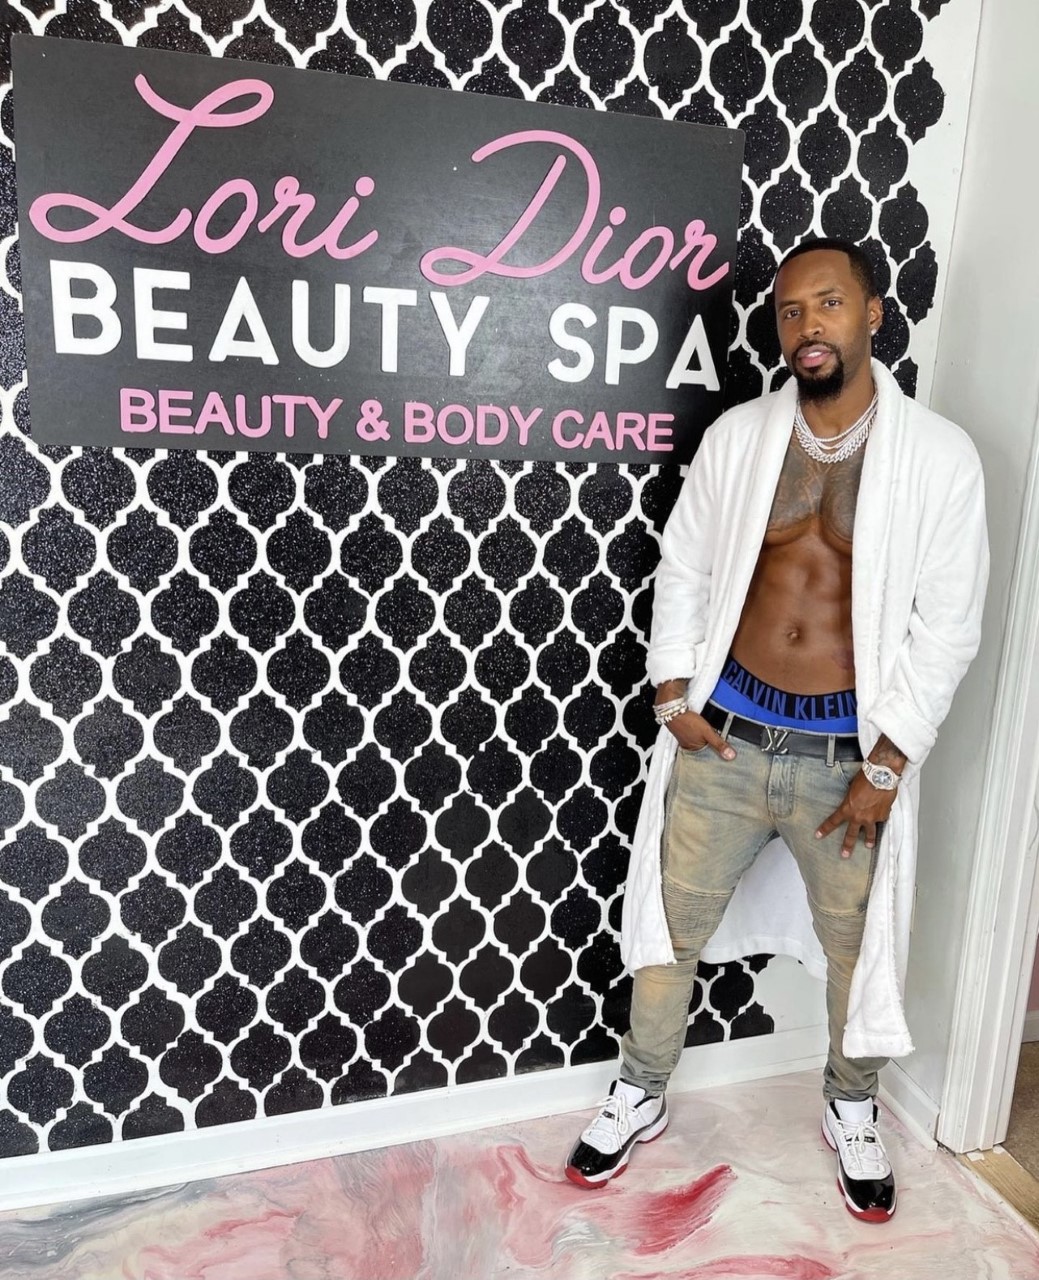 Lori Dior Beauty Institute